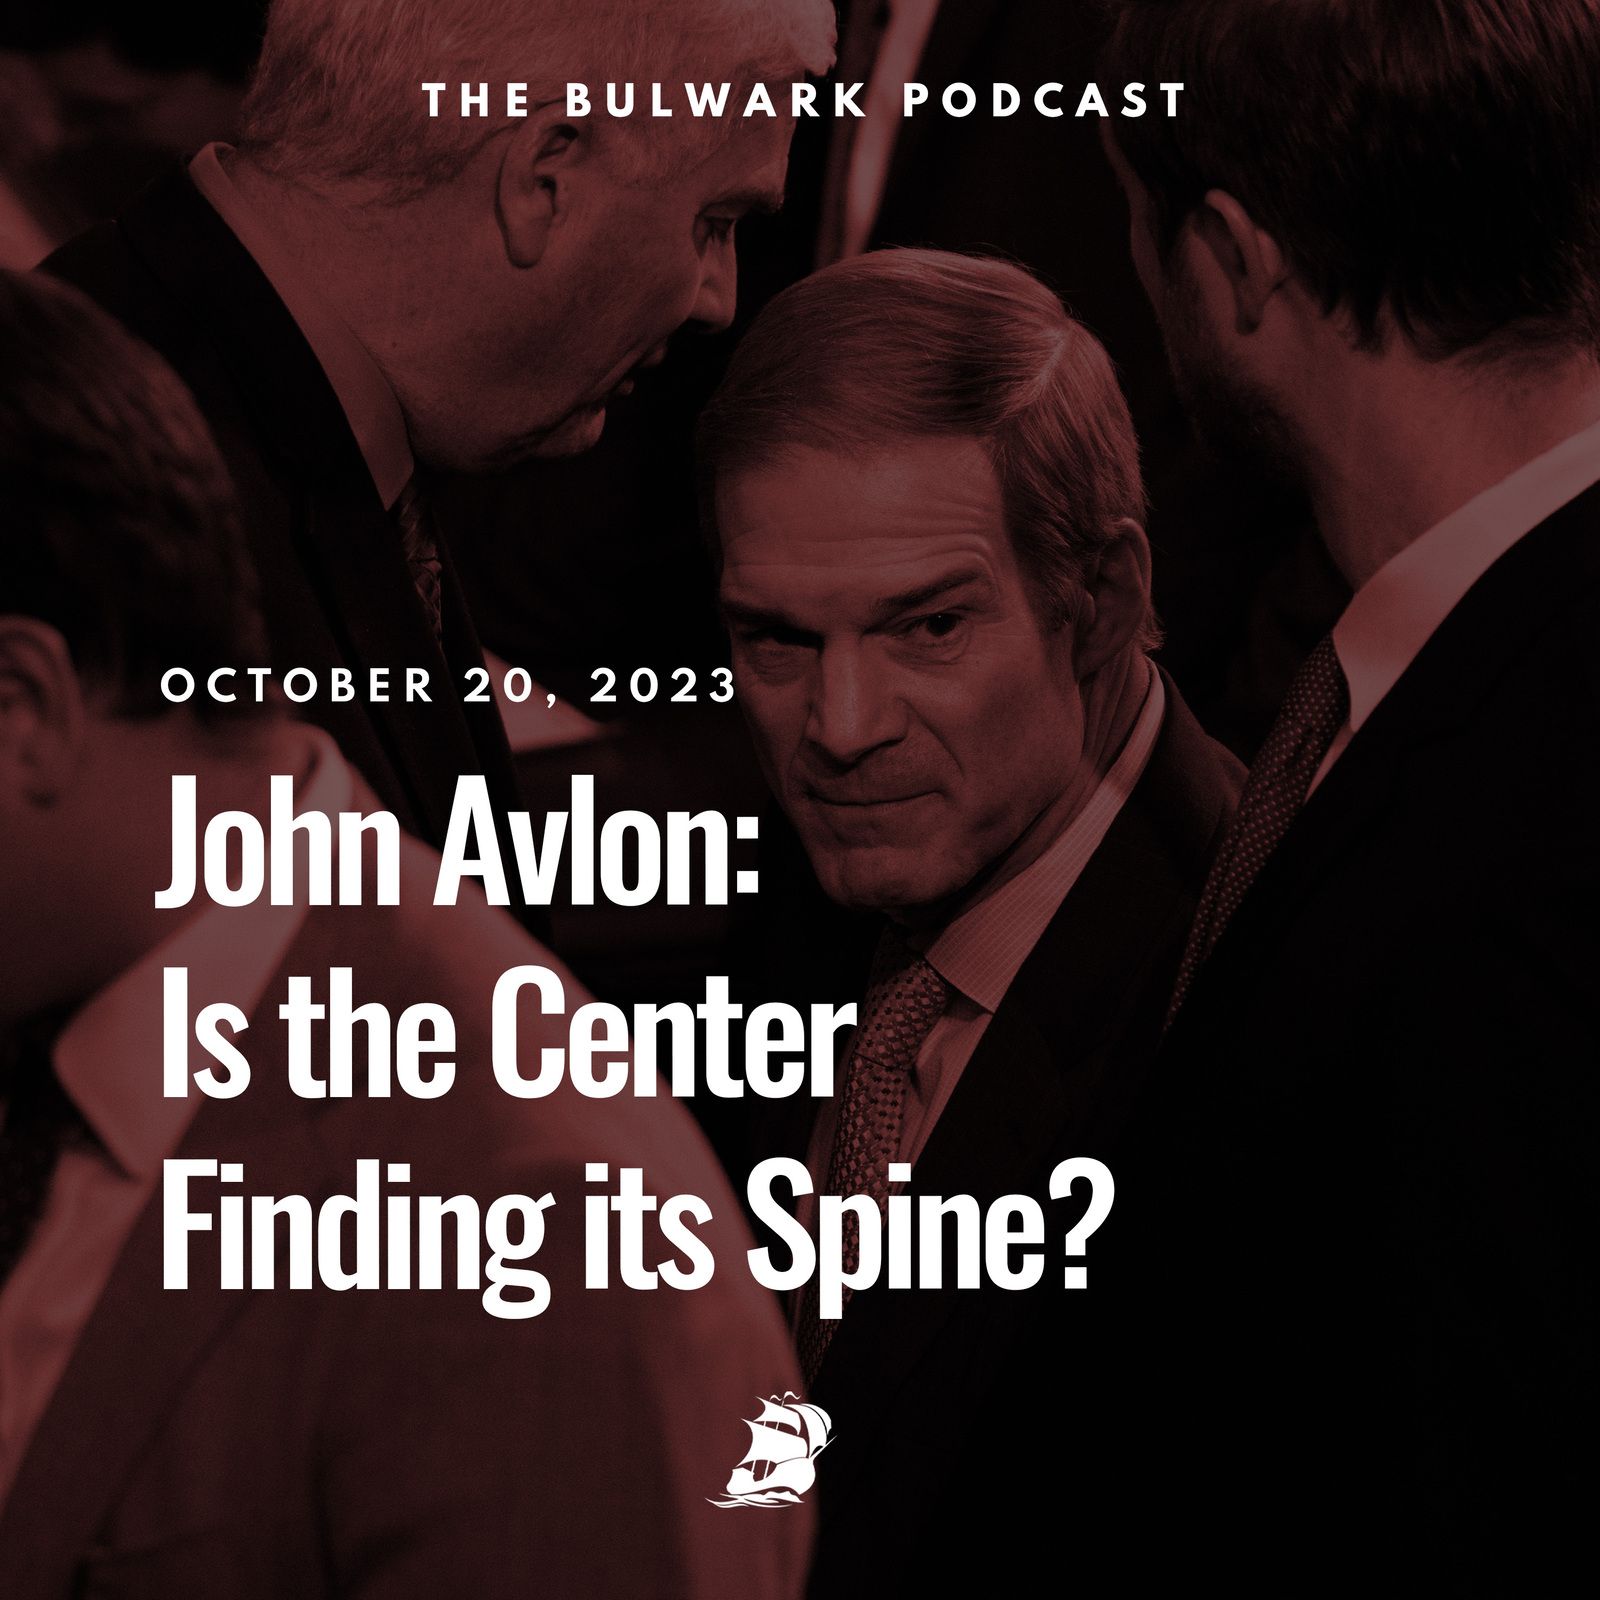 John Avlon: Is the Center Finding Its Spine?